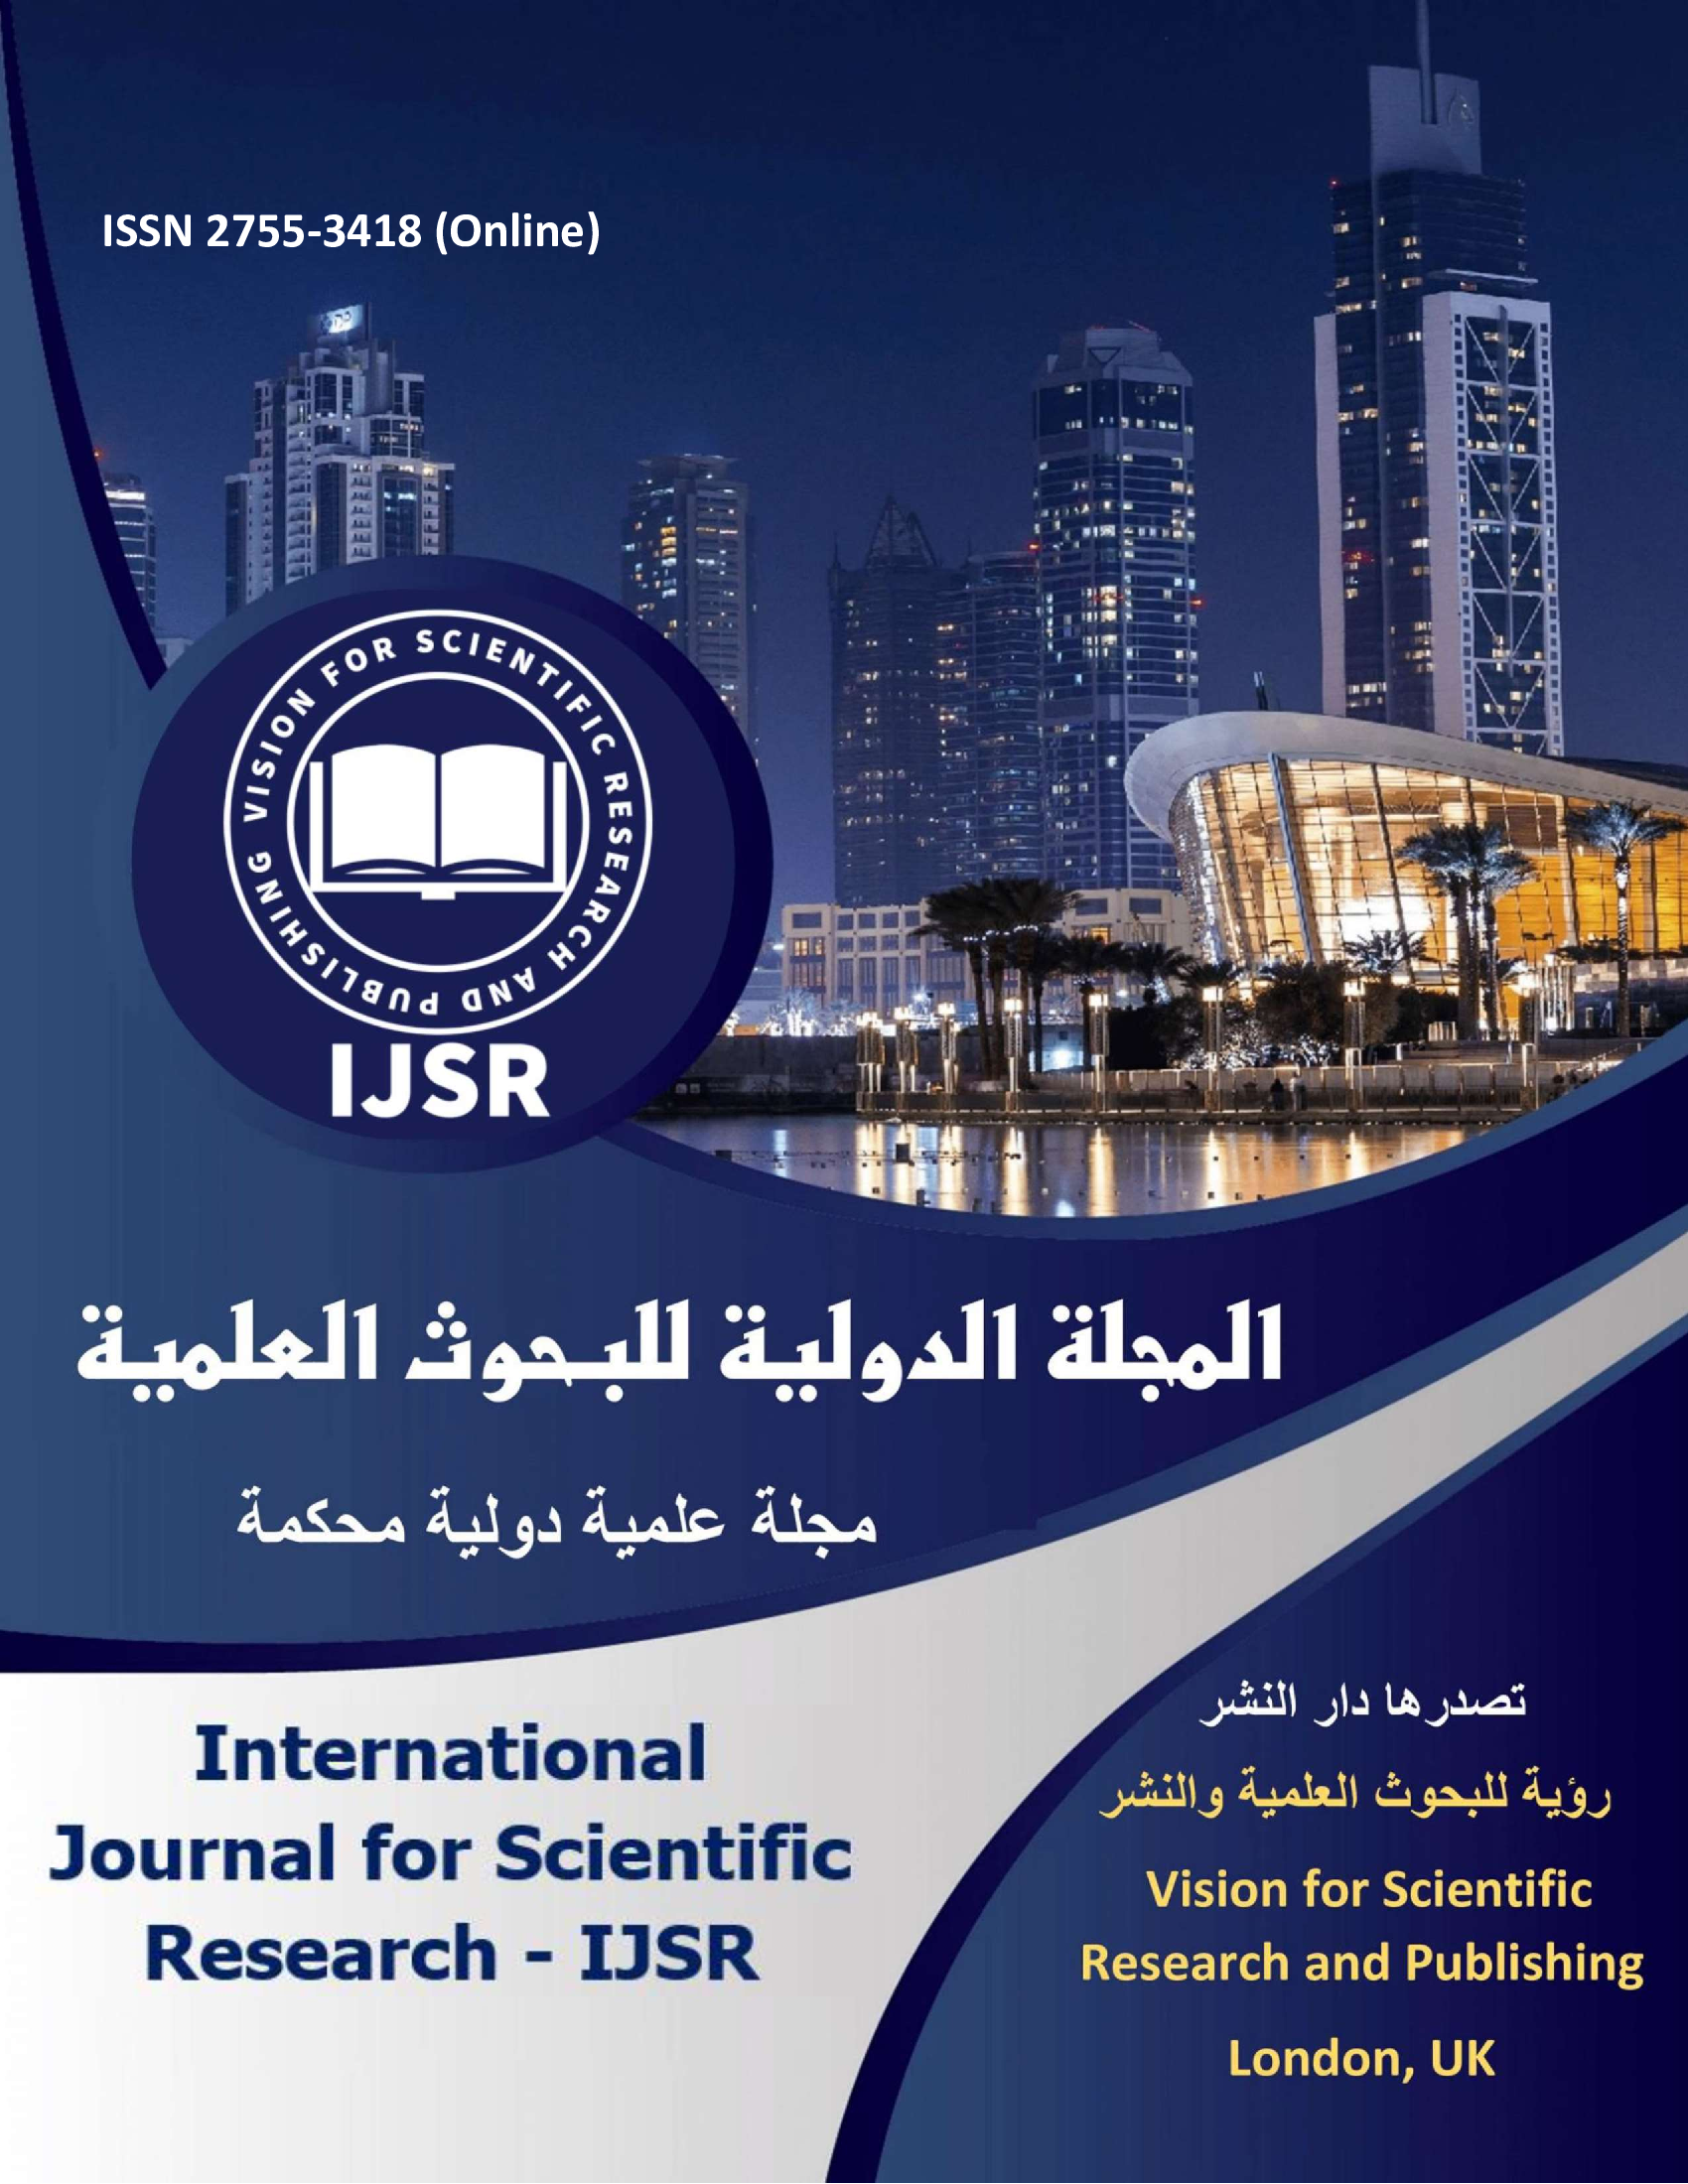 المجلة الدولية للبحوث العلمية من مجلات باللغة العربية - international journal for scientific research - IJSR cover